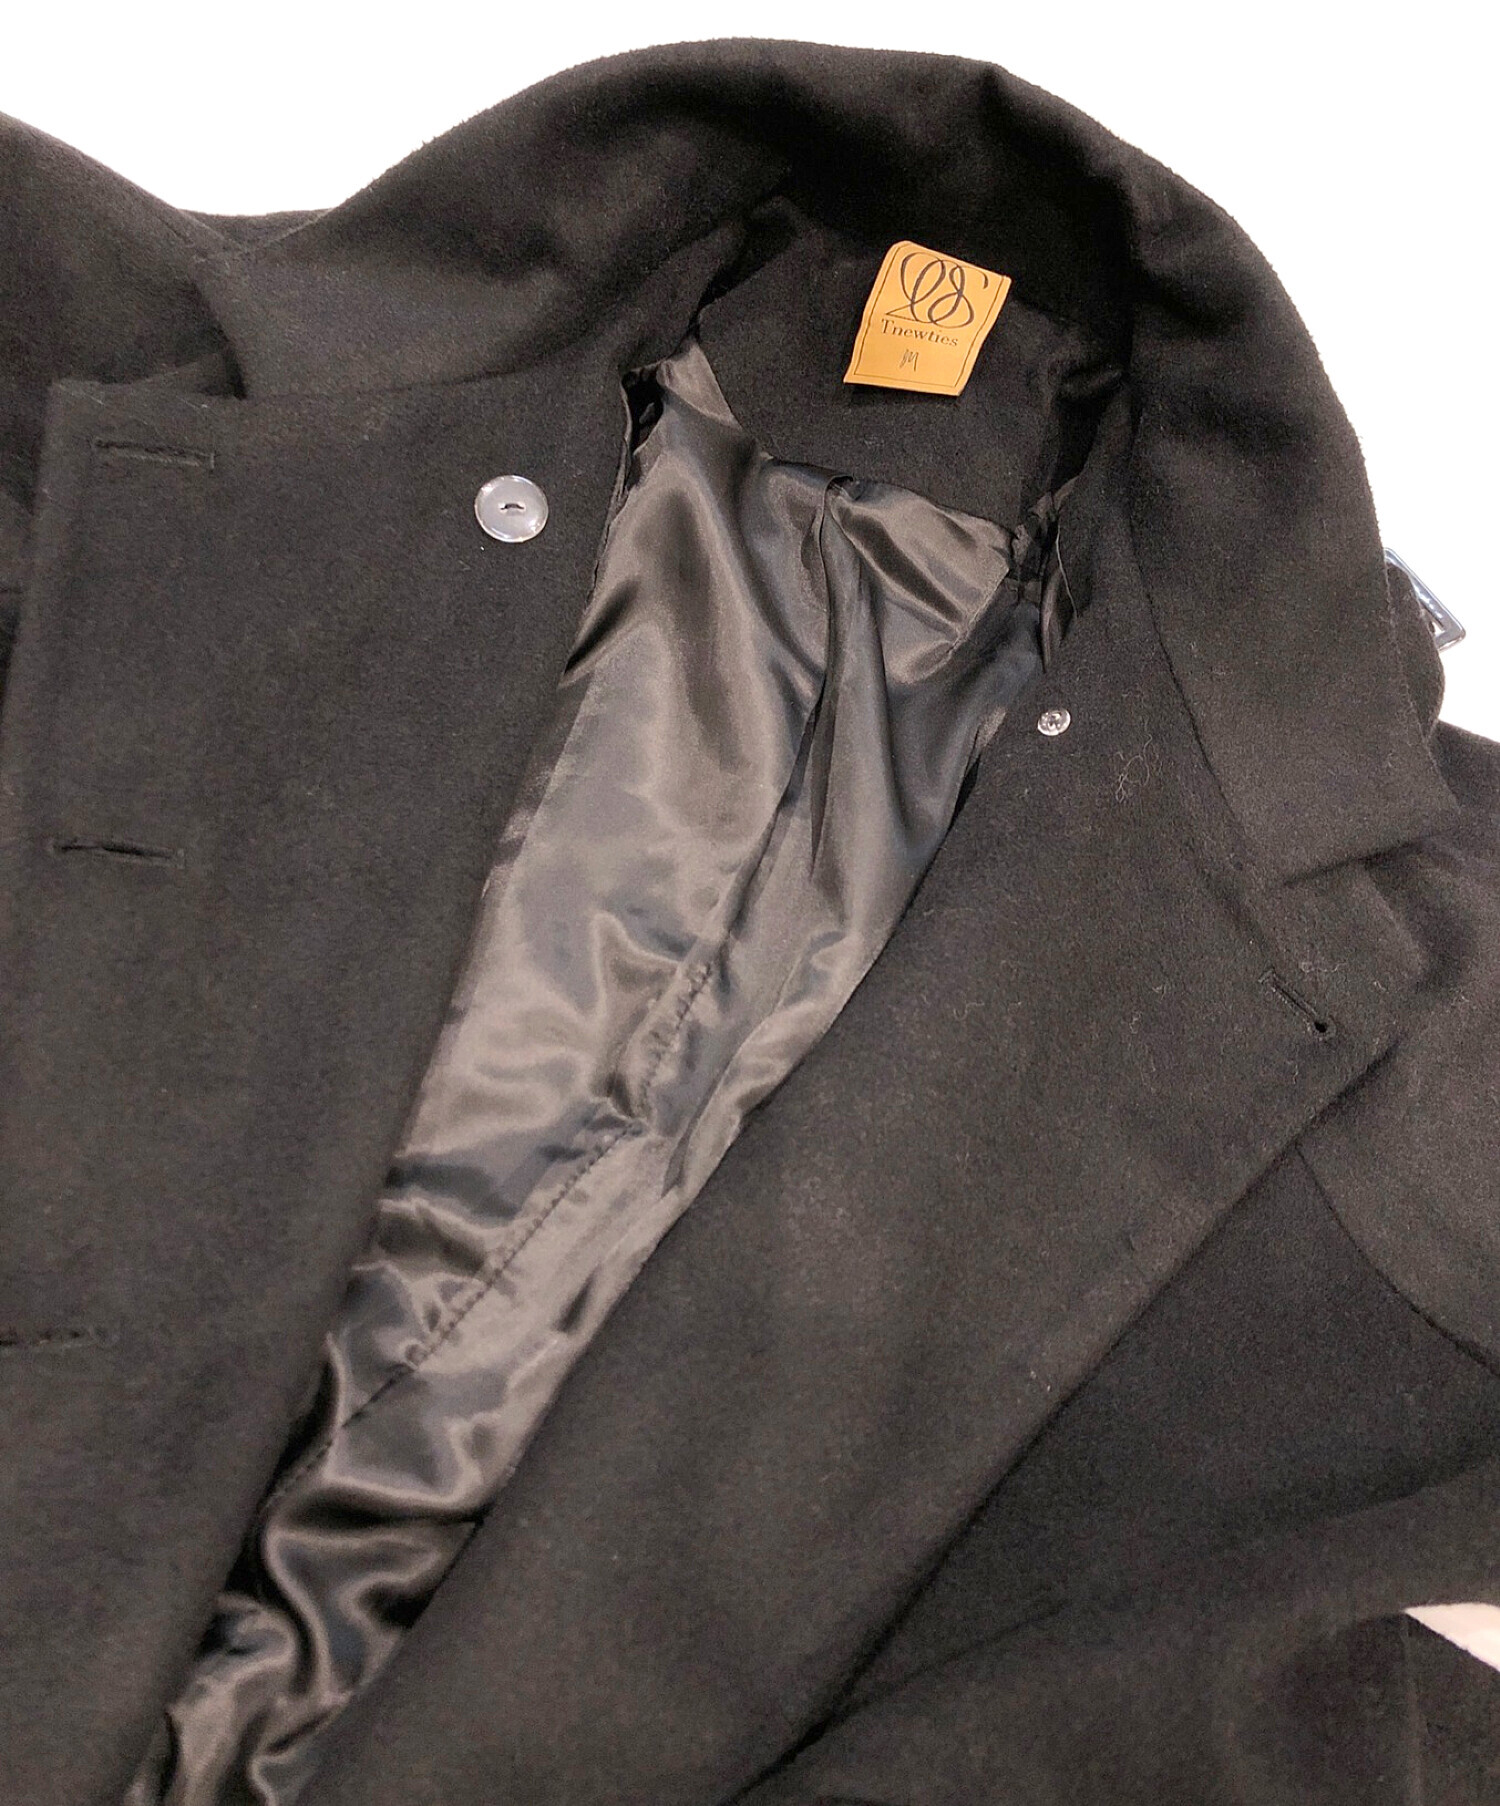 Tnewties (トゥエンティーズ) 「とても重要なミッション」ロングコート ロングコート ブラック サイズ:M